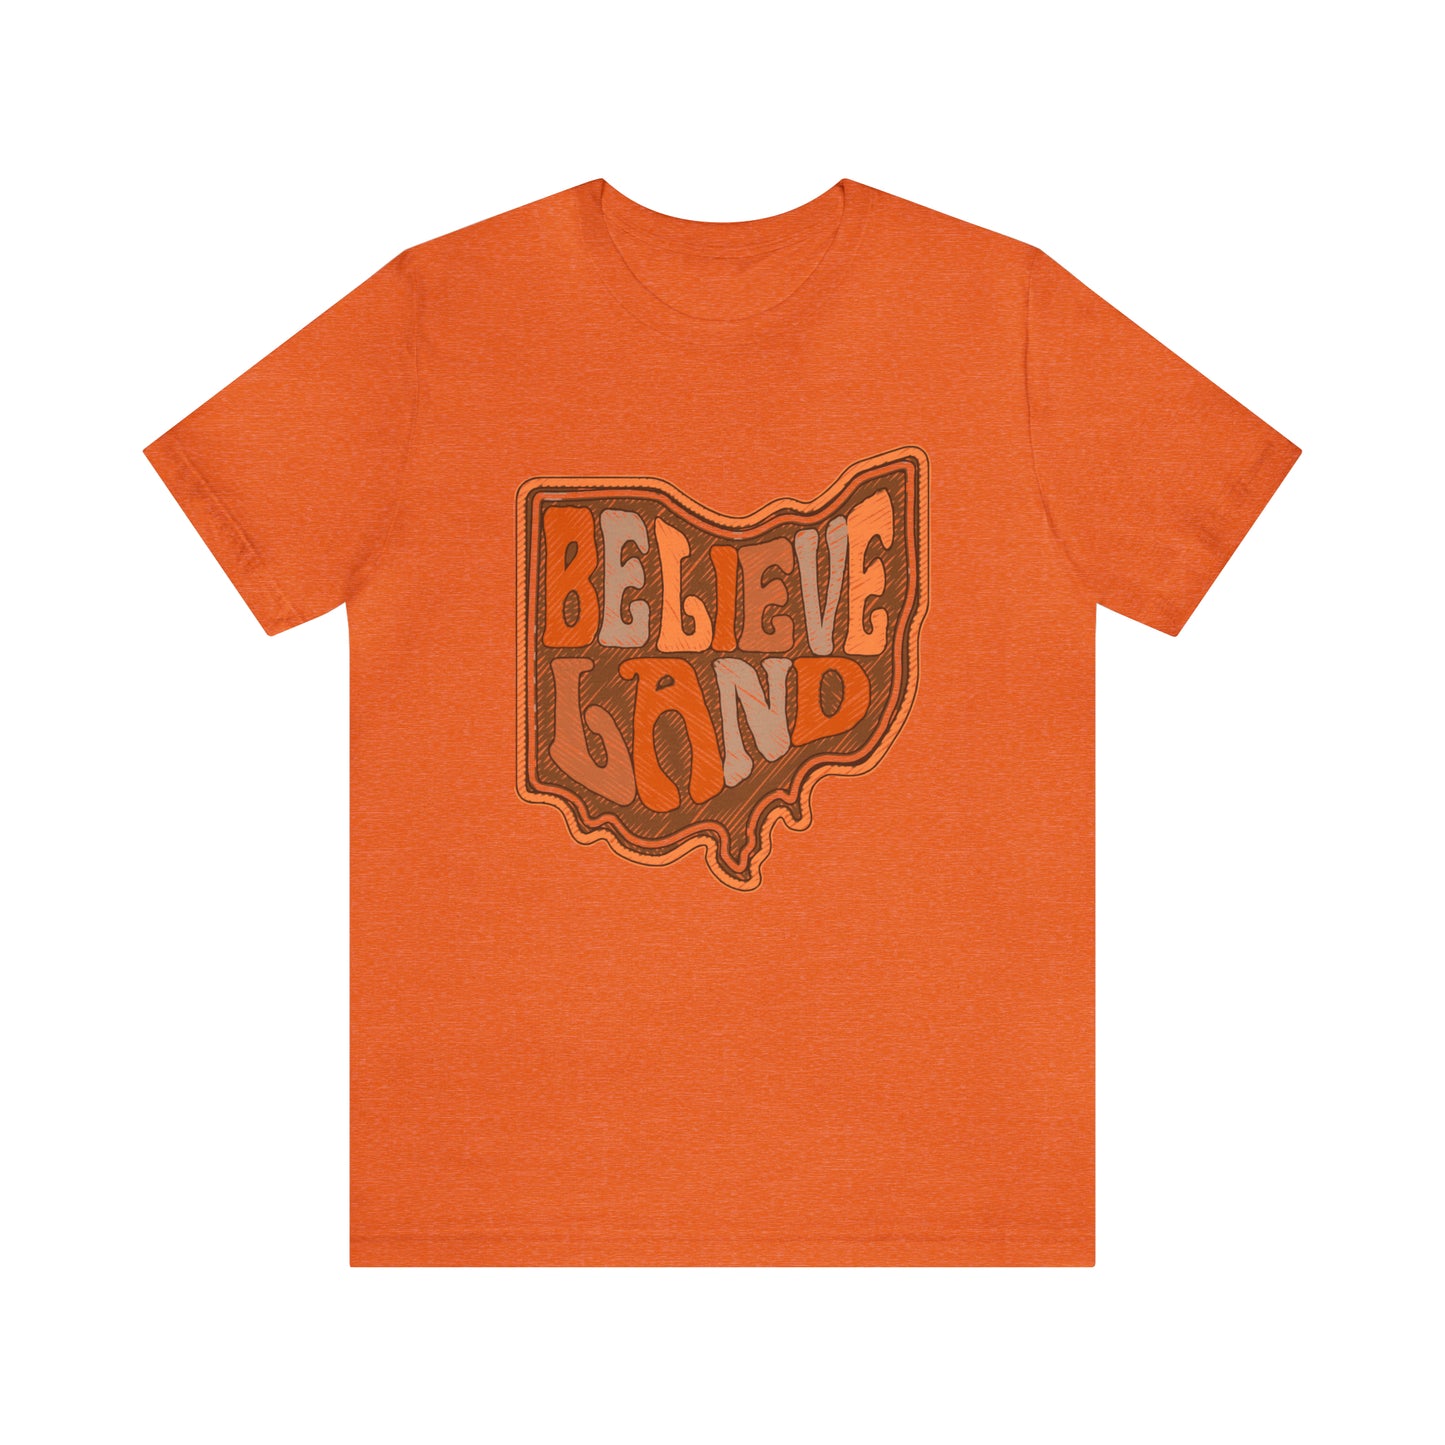  Cleveland Browns Short Sleeve T-Shirt - Browns Believeland NFL Football Tee - Men's Women's Oversized Tee - Design 6